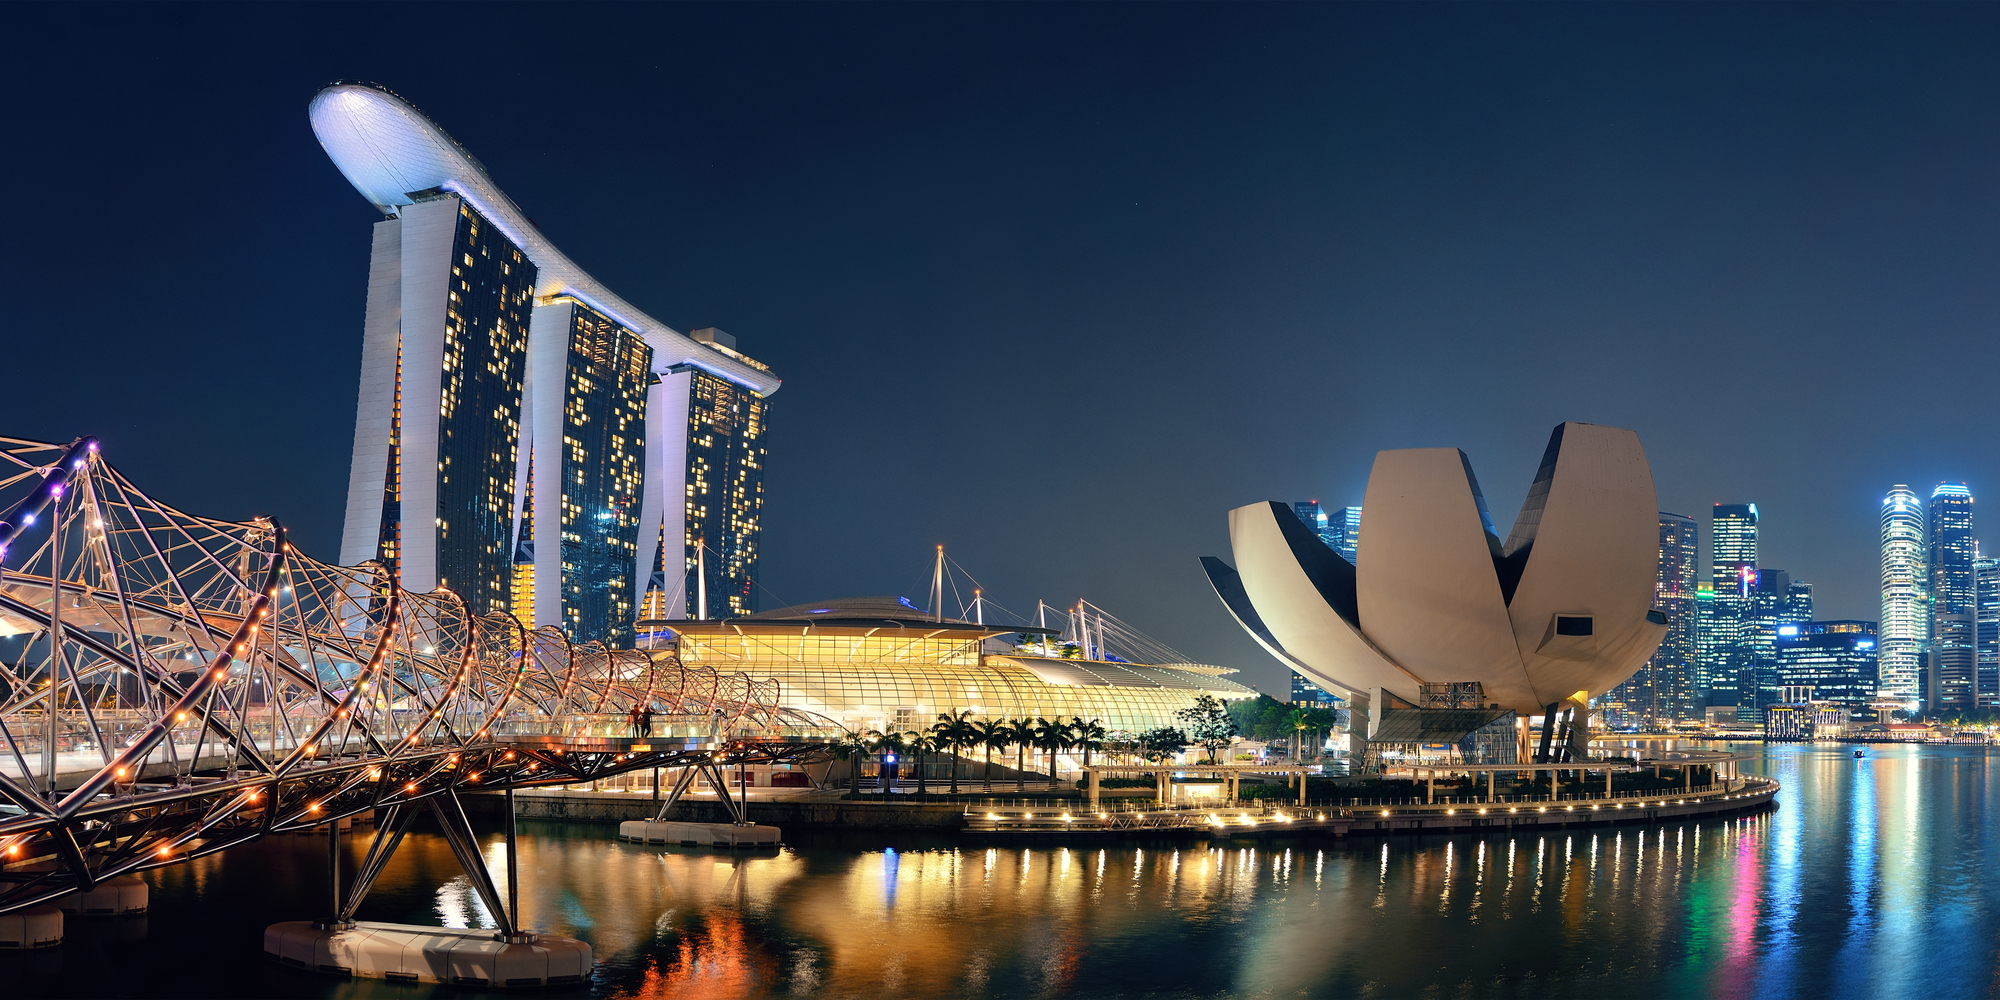 Singapore skyline at night with urban buildings